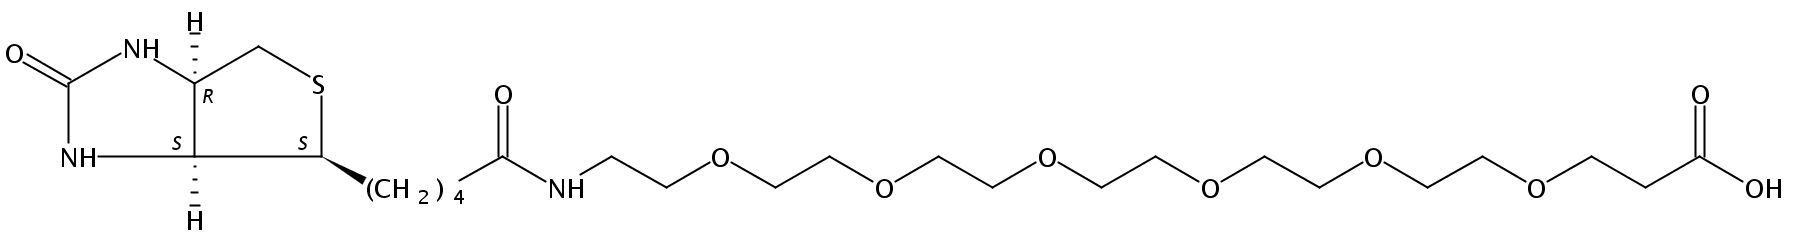 小分子PEG衍生物 生物素-PEG-羧基